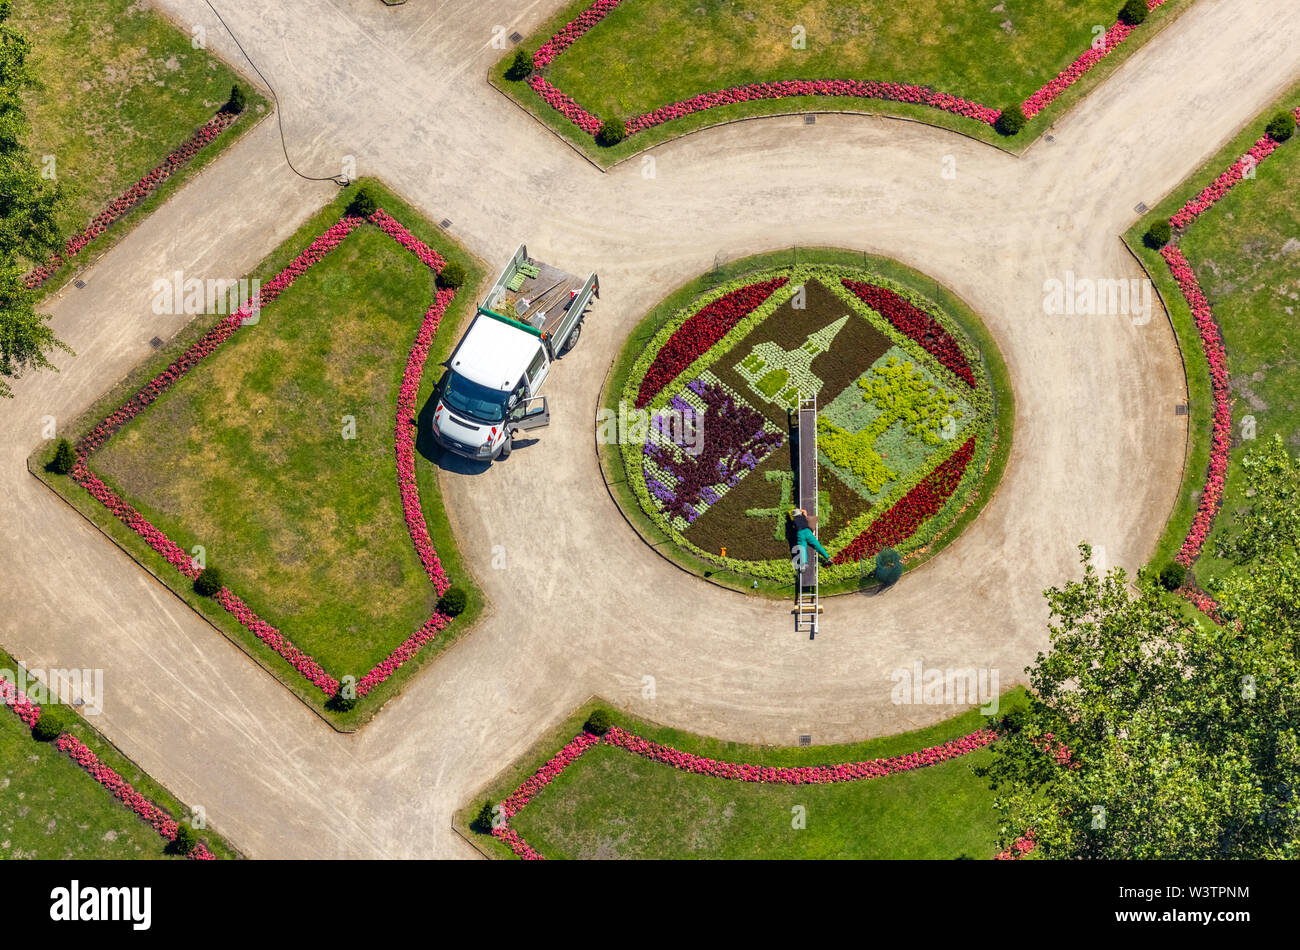 Veduta aerea del castello Bergère con giardino barocco e il letto con il simbolo della città di Gelsenkirchen con il giardiniere, che lavora nel letto di fiori con la guida Foto Stock